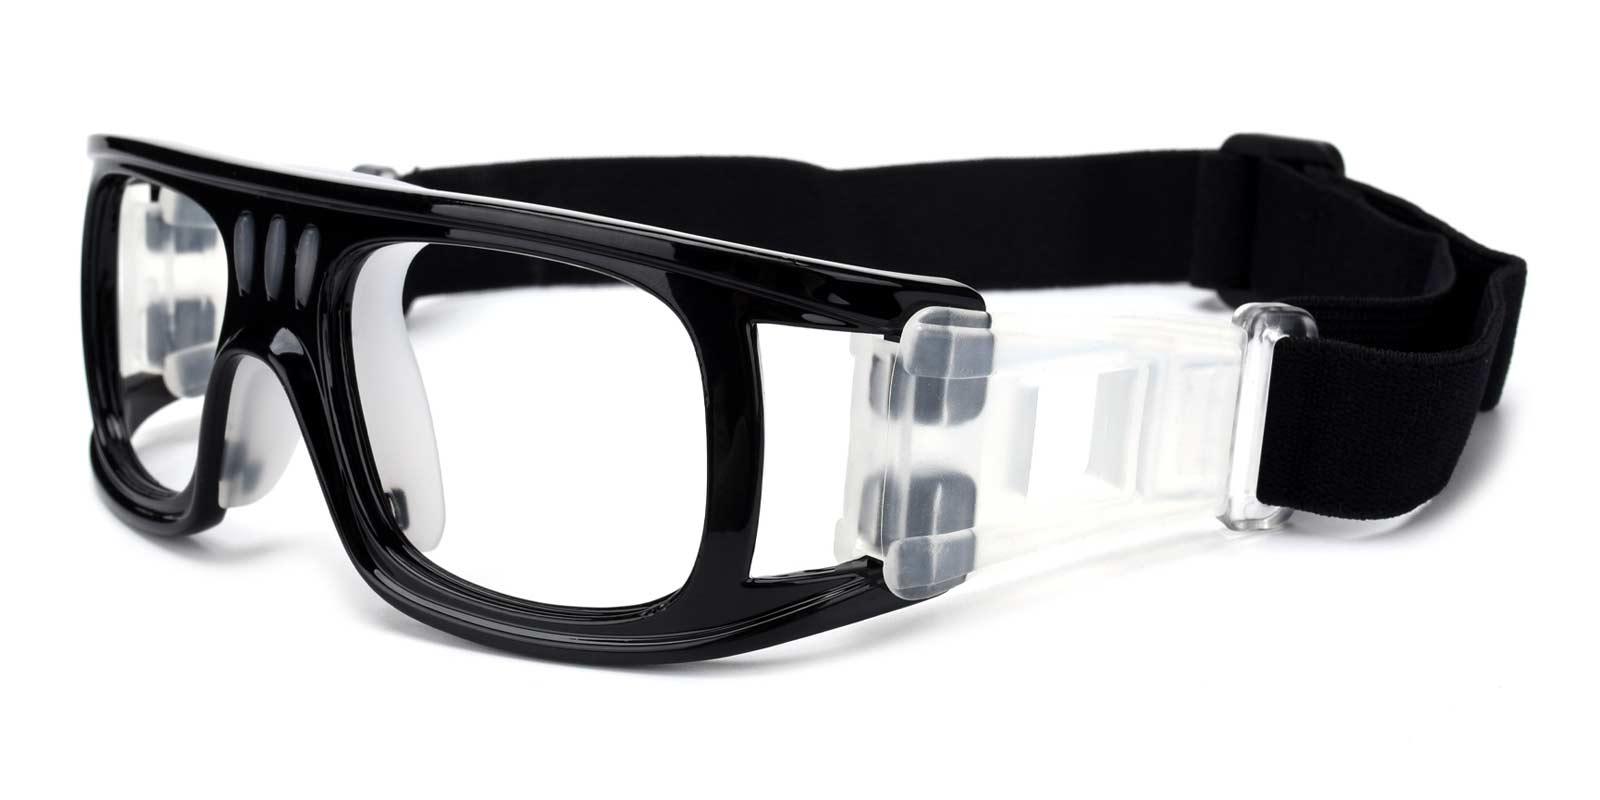 Hallettsville Black Plastic SportsGlasses Frames from ABBE Glasses